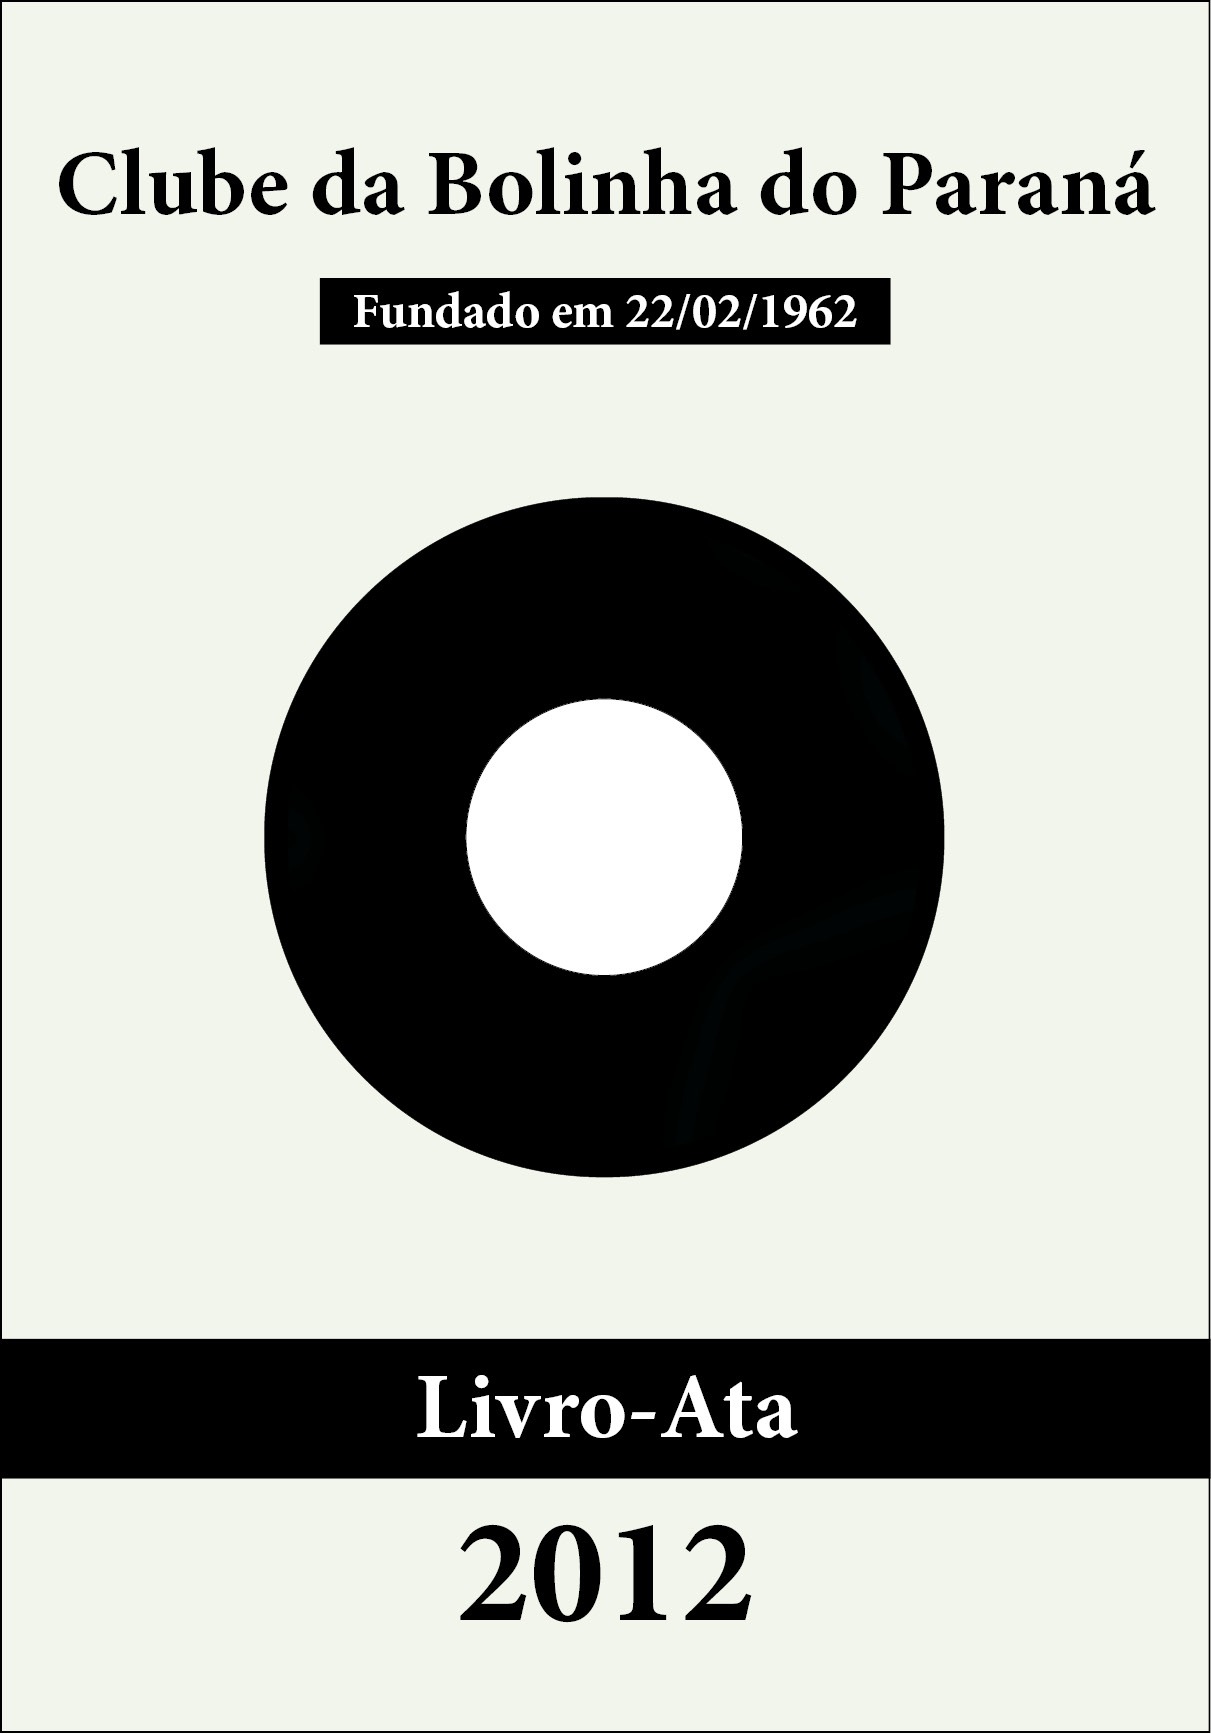 Bolinha - Livro-Ata 2012